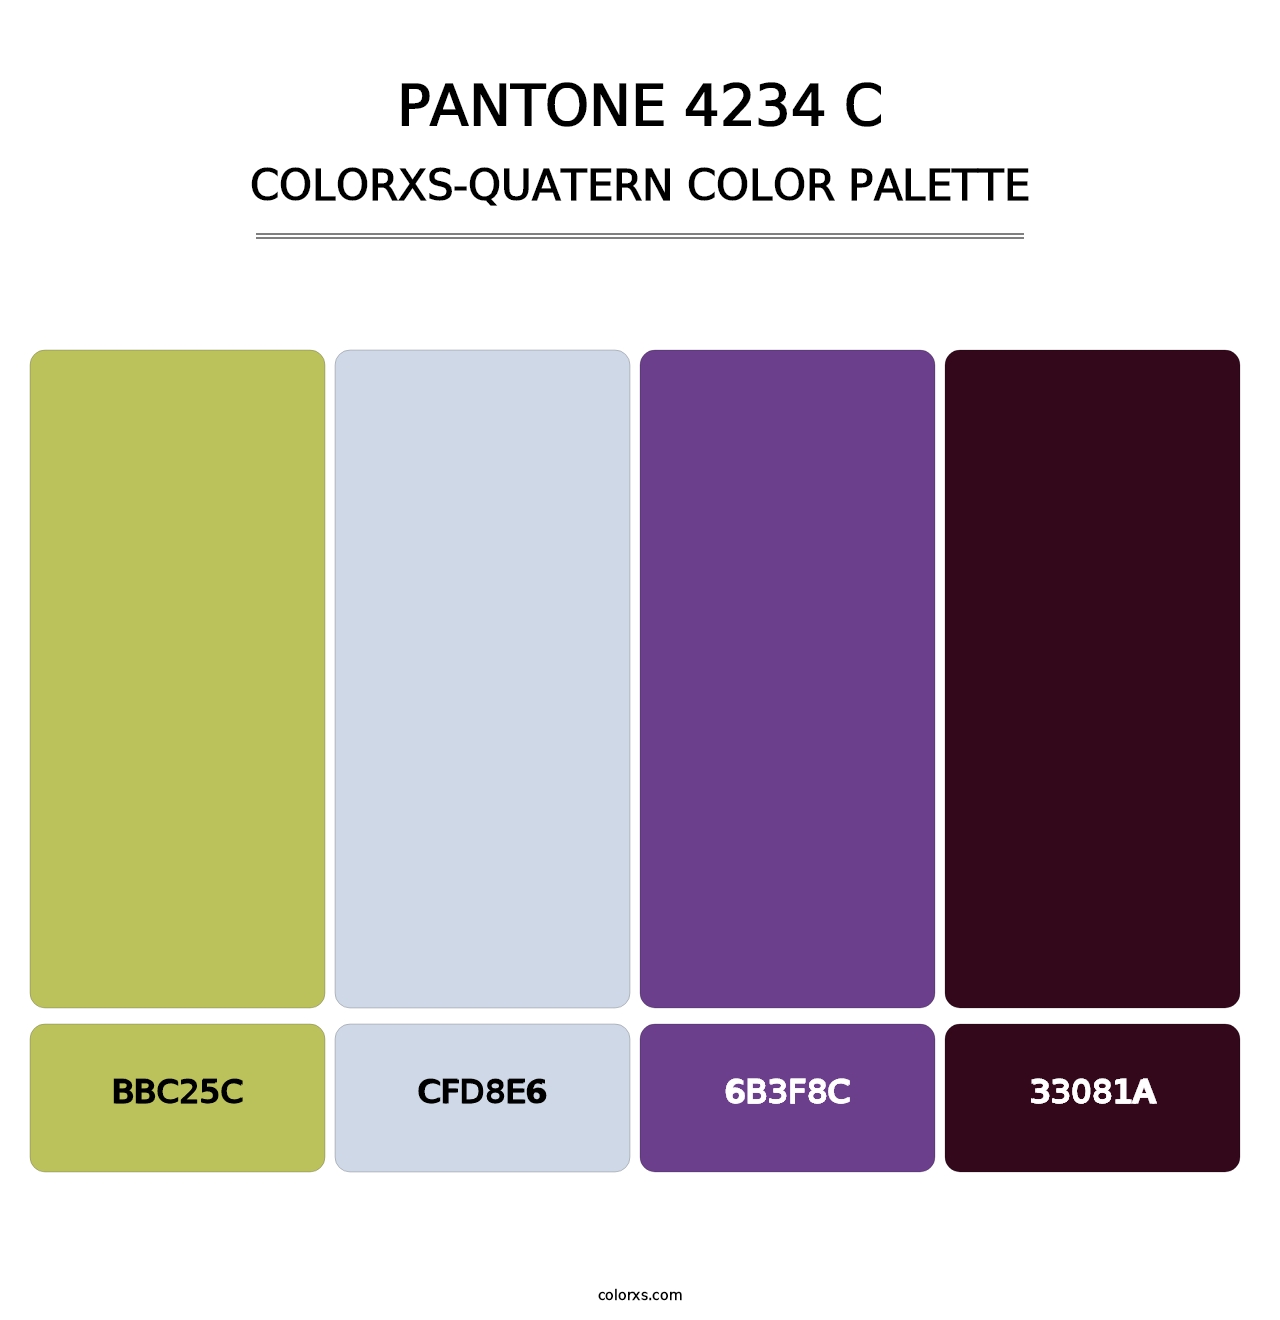 PANTONE 4234 C - Colorxs Quatern Palette